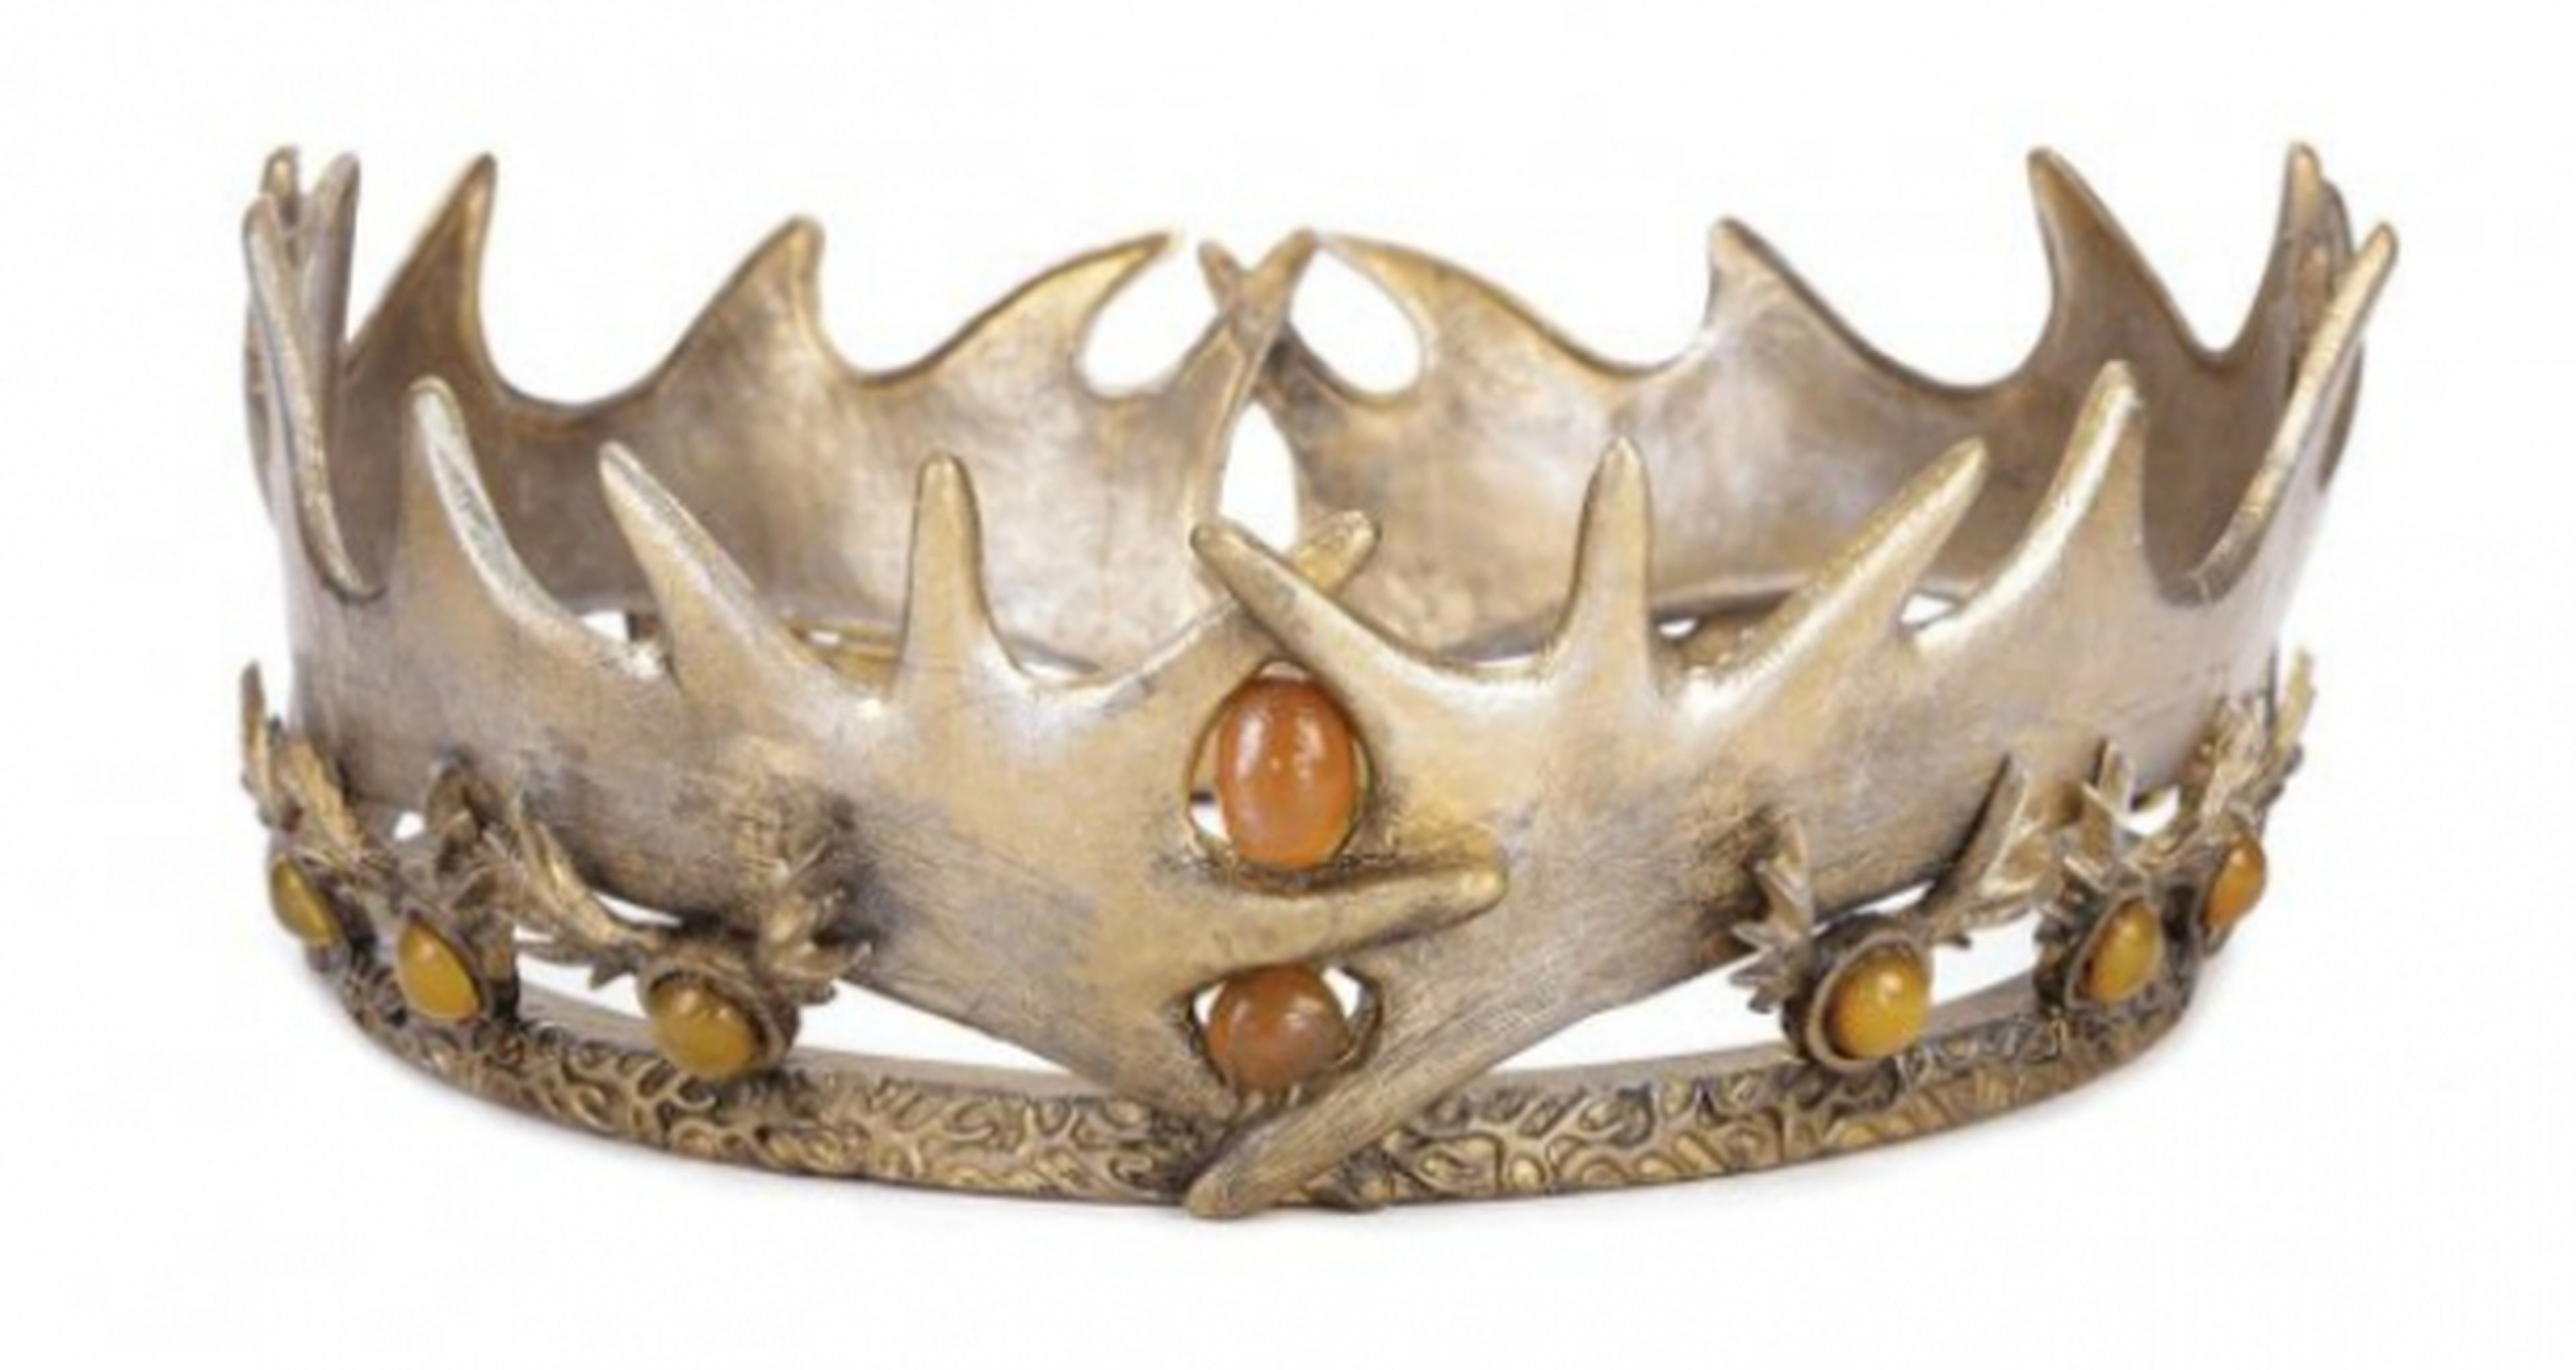 Objetos de Juego de tronos o El señor de los anillos se subastarán en en la 65ª Hollywood Auction